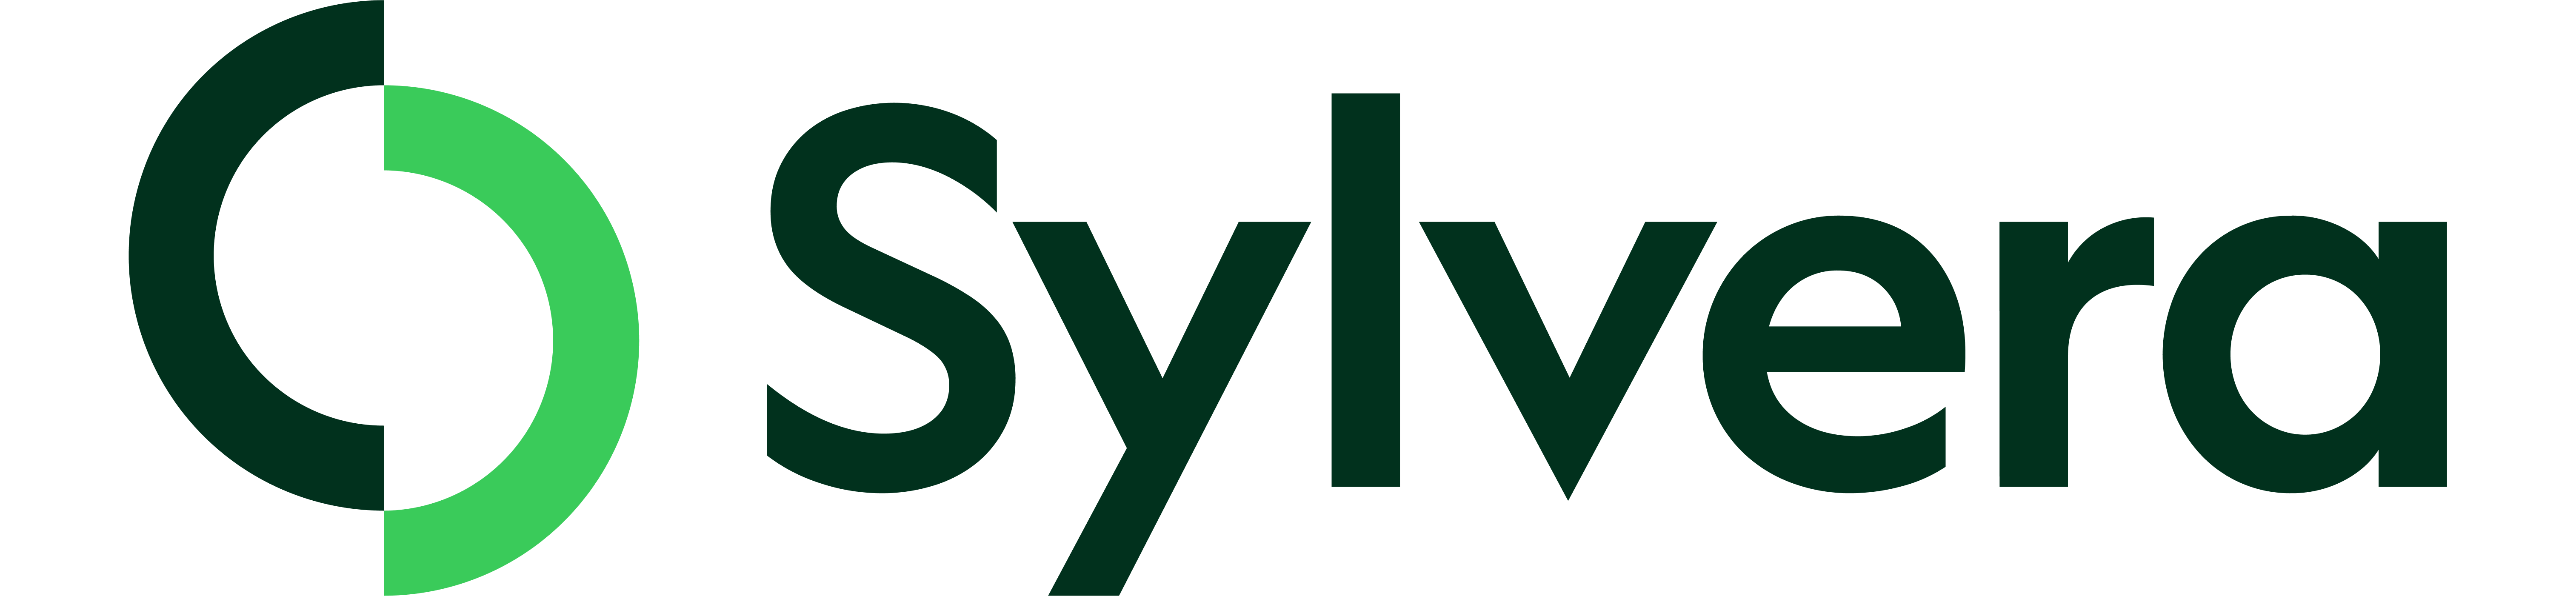 Sylvera logo color 6054x1401.png